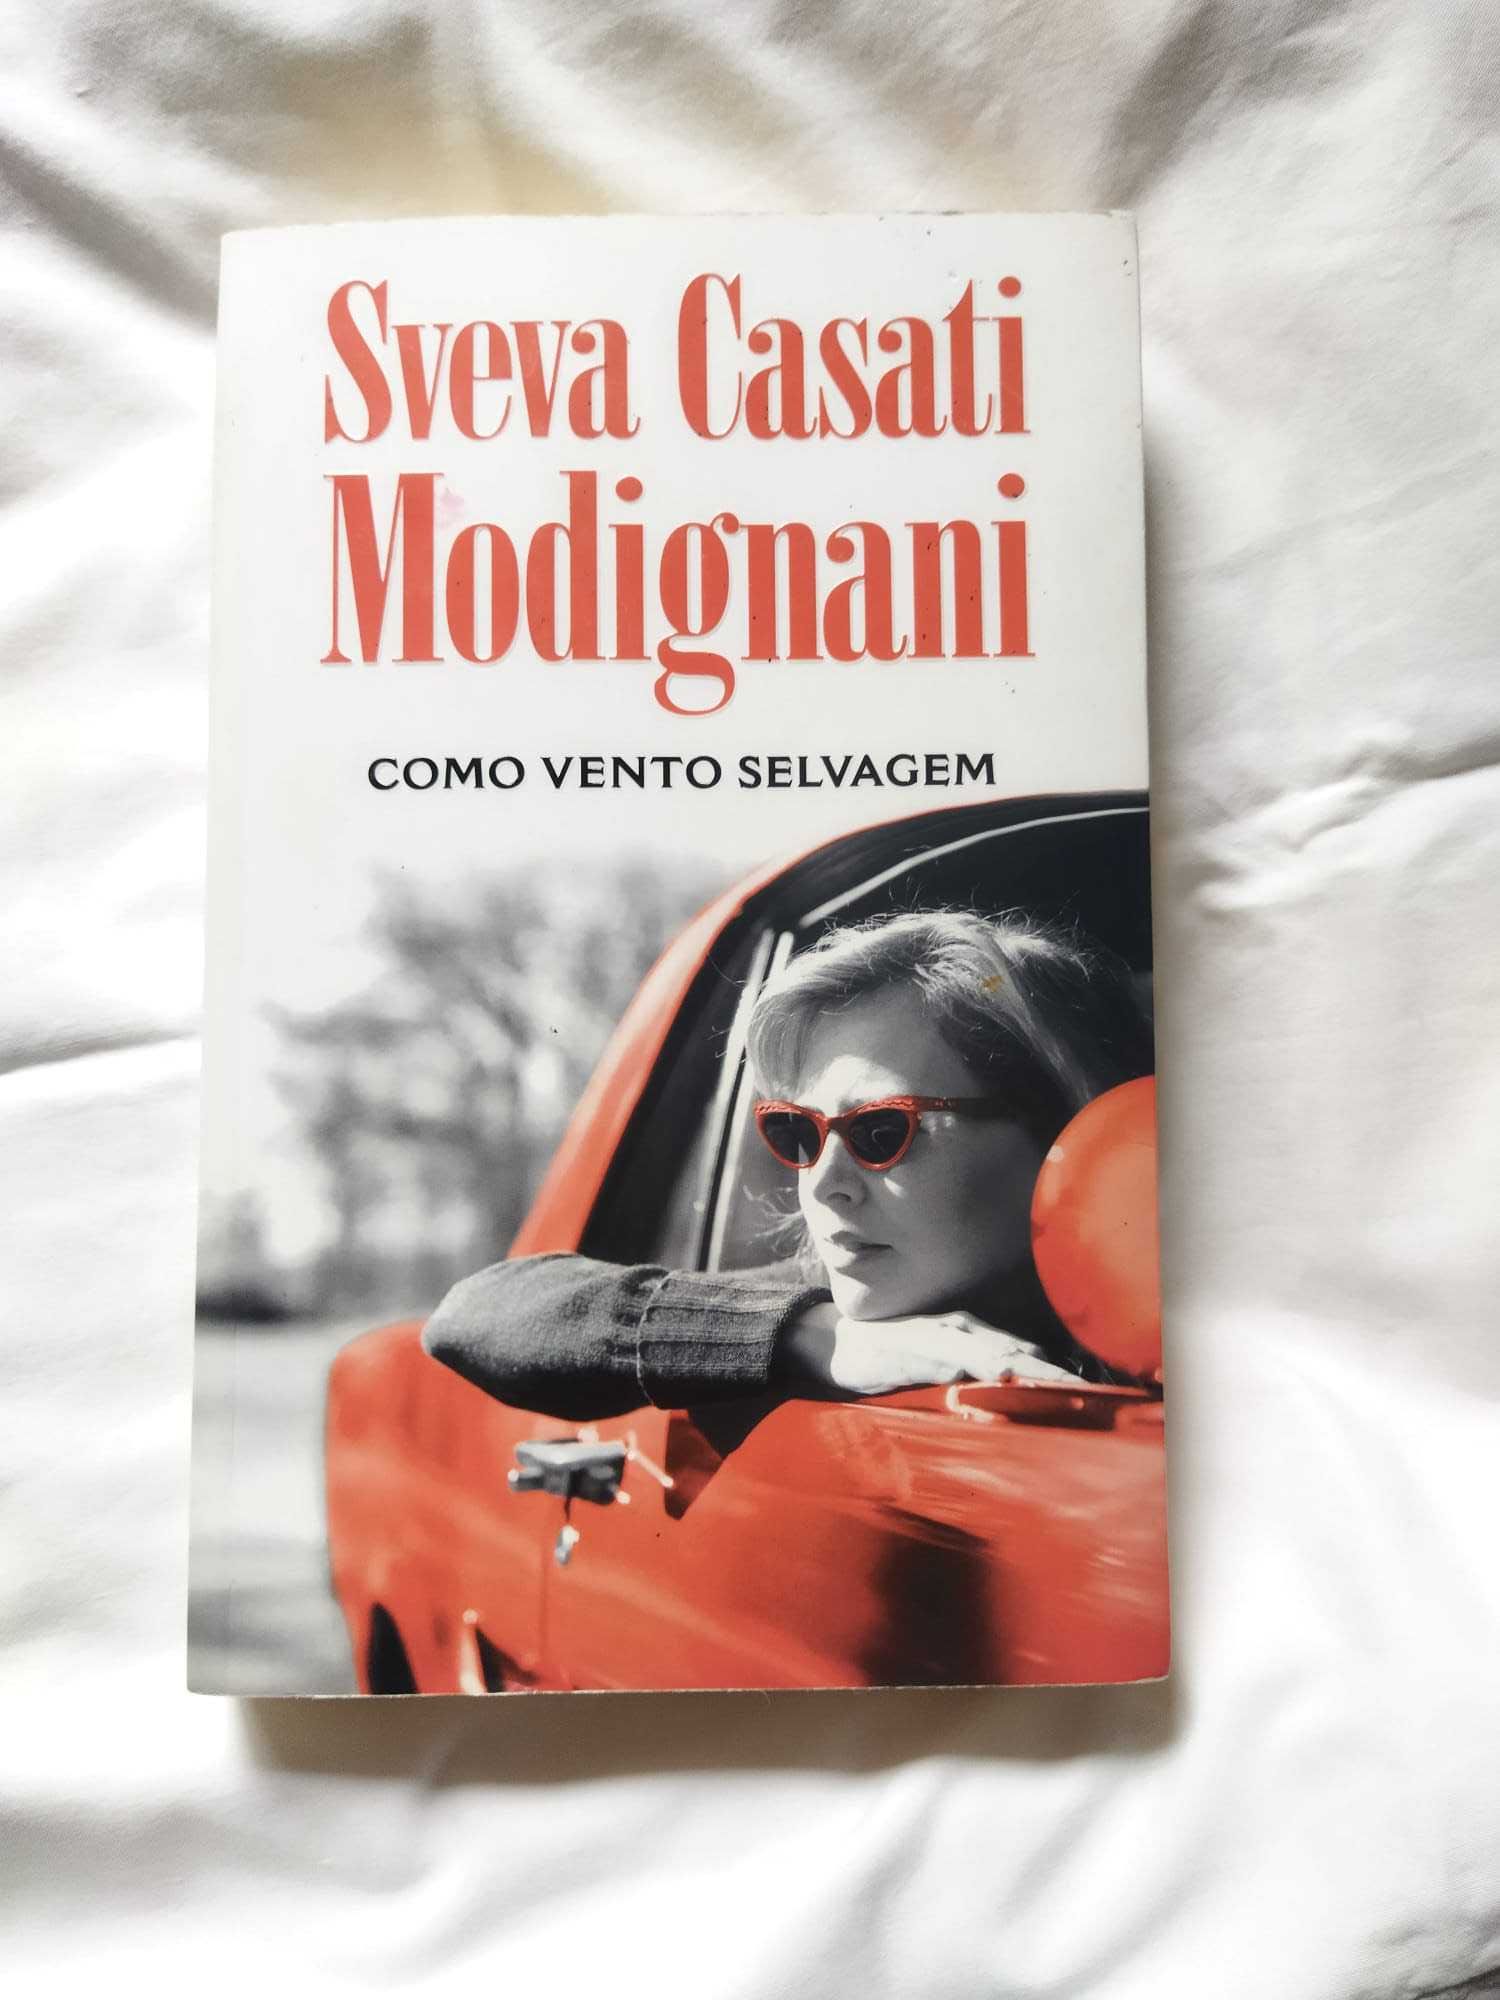 Descubra os Encantos dos Livros de Sveva Casati Modignani!